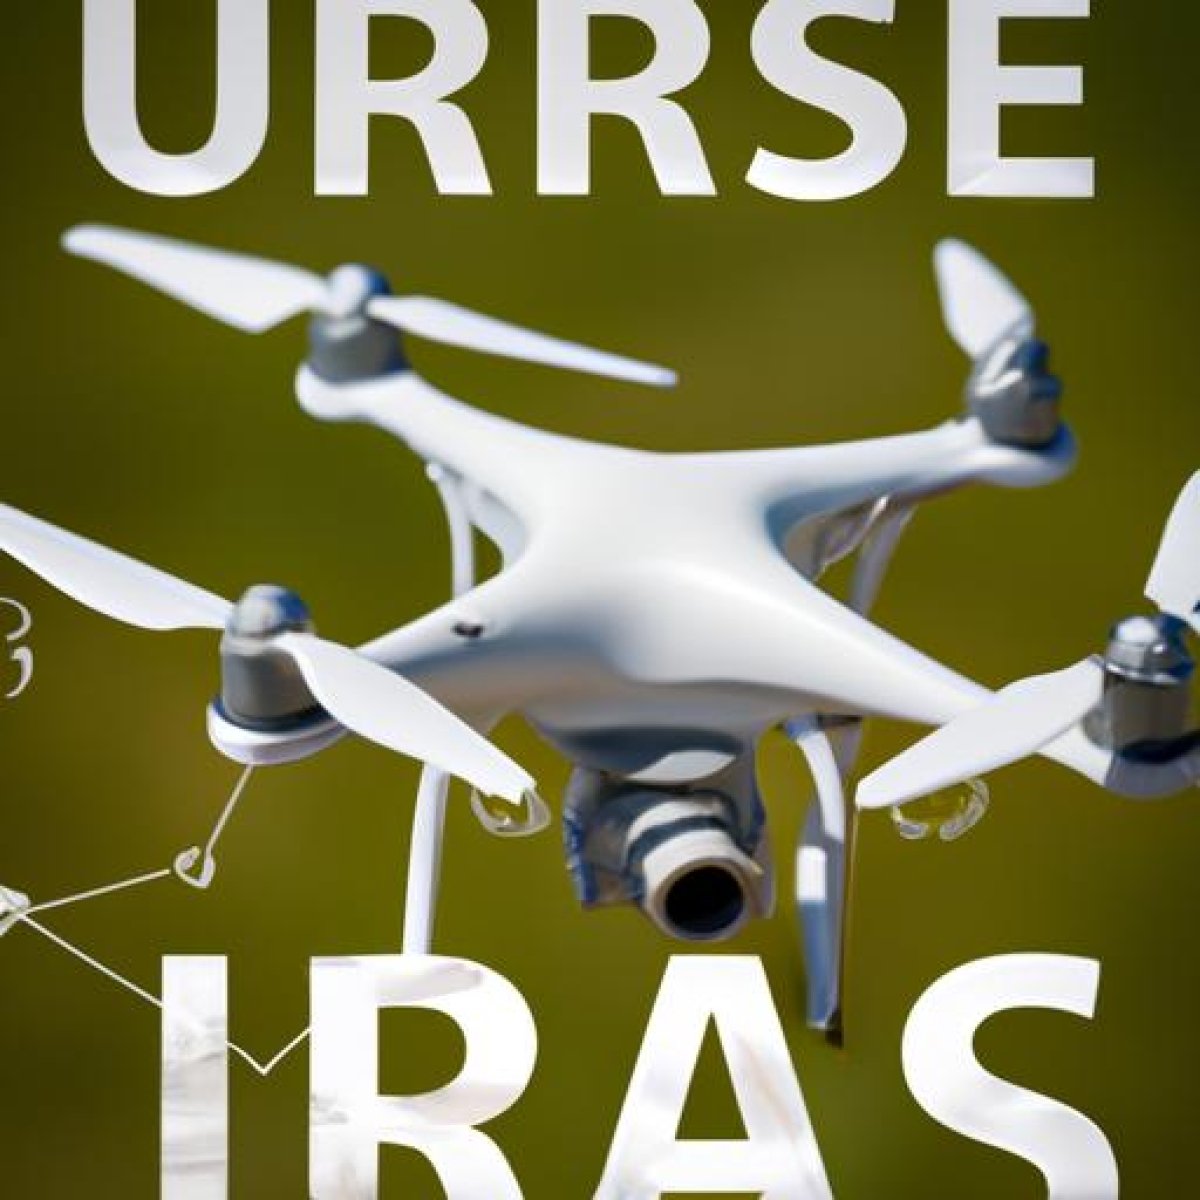 Uso de drones en españa